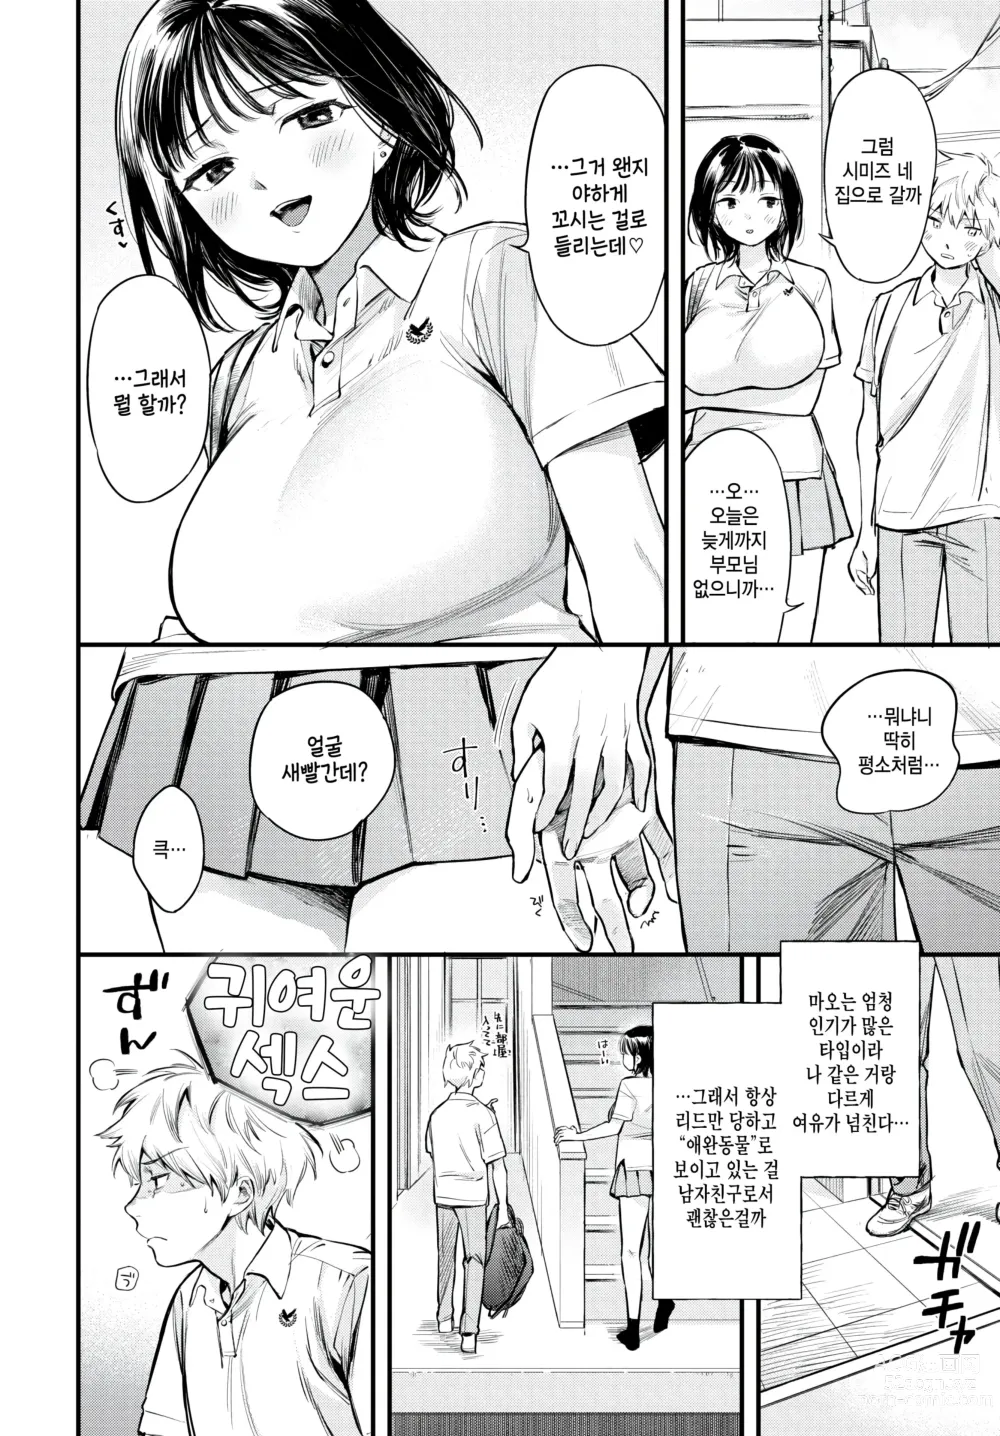 Page 2 of manga Yoyuu na Kanojo no Torokegao - roomy lovers melting face